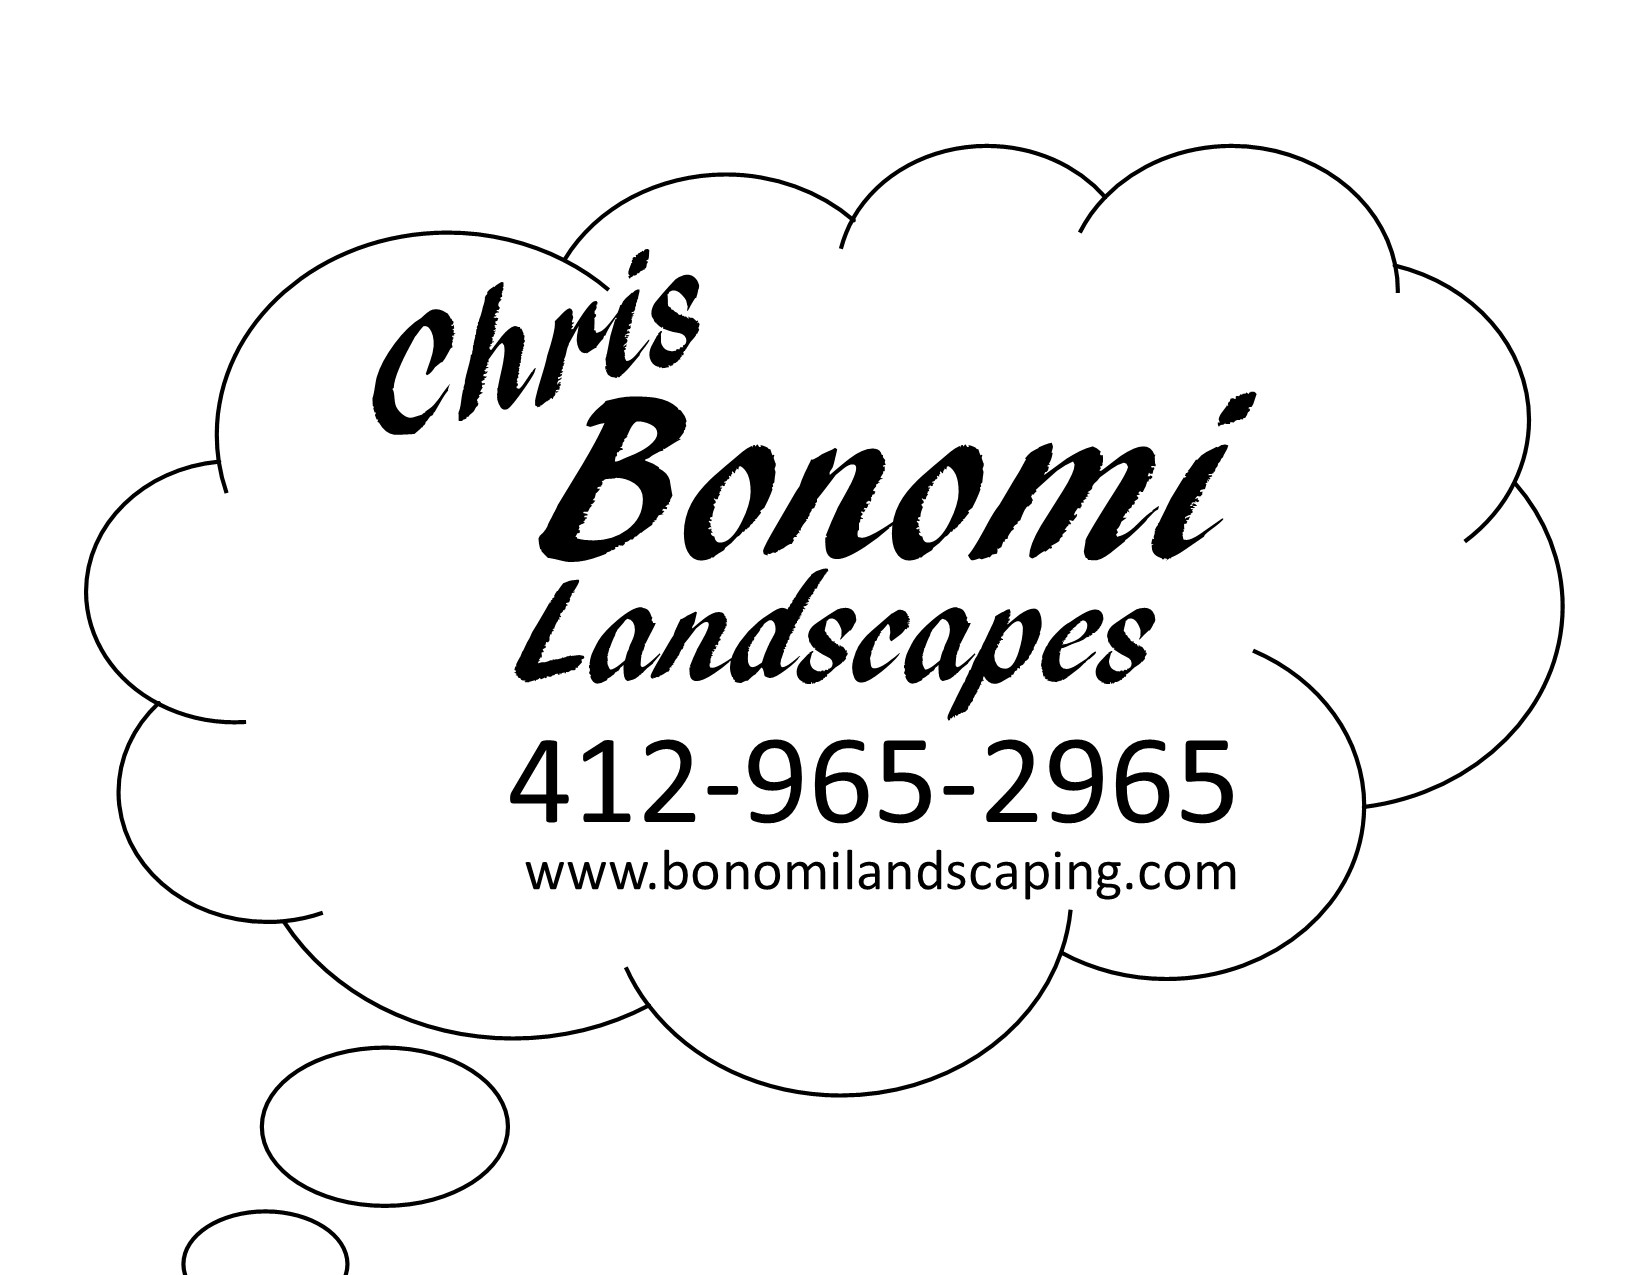 Chris Bonomi Landscapes Logo